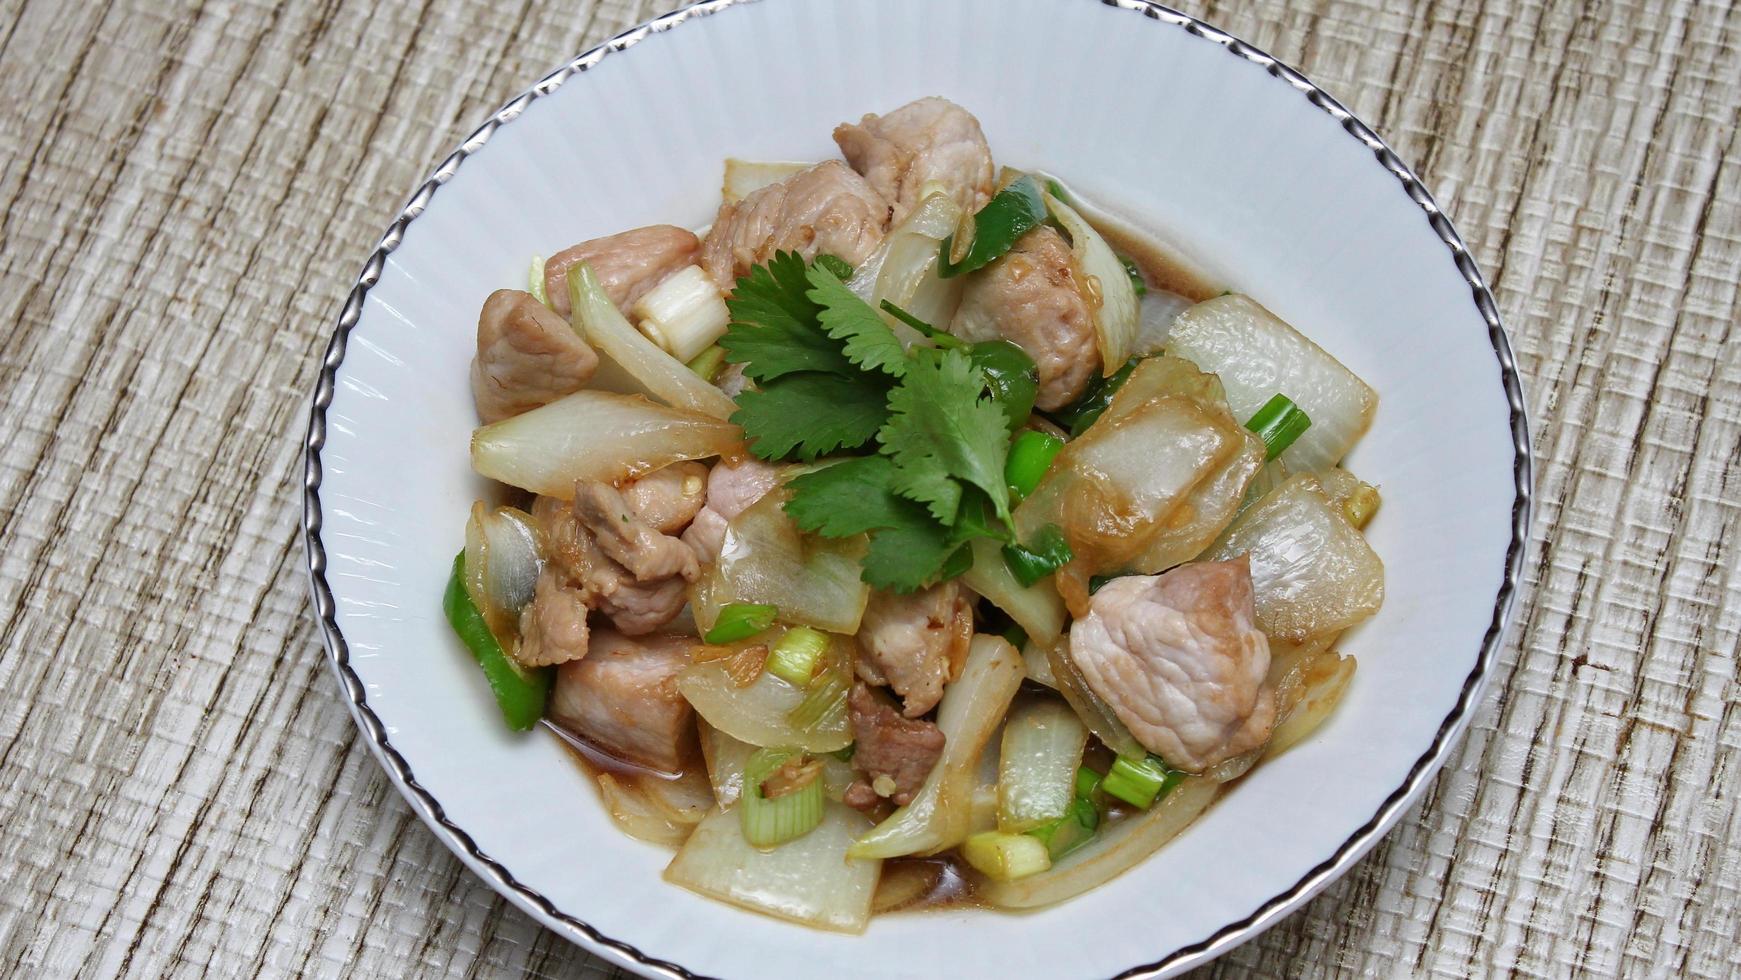 carne de porco frita com pimenta com cebola e cebolinha servida em um prato branco, carne de porco frita com pimenta é um prato tailandês popular que os tailandeses comem. foto